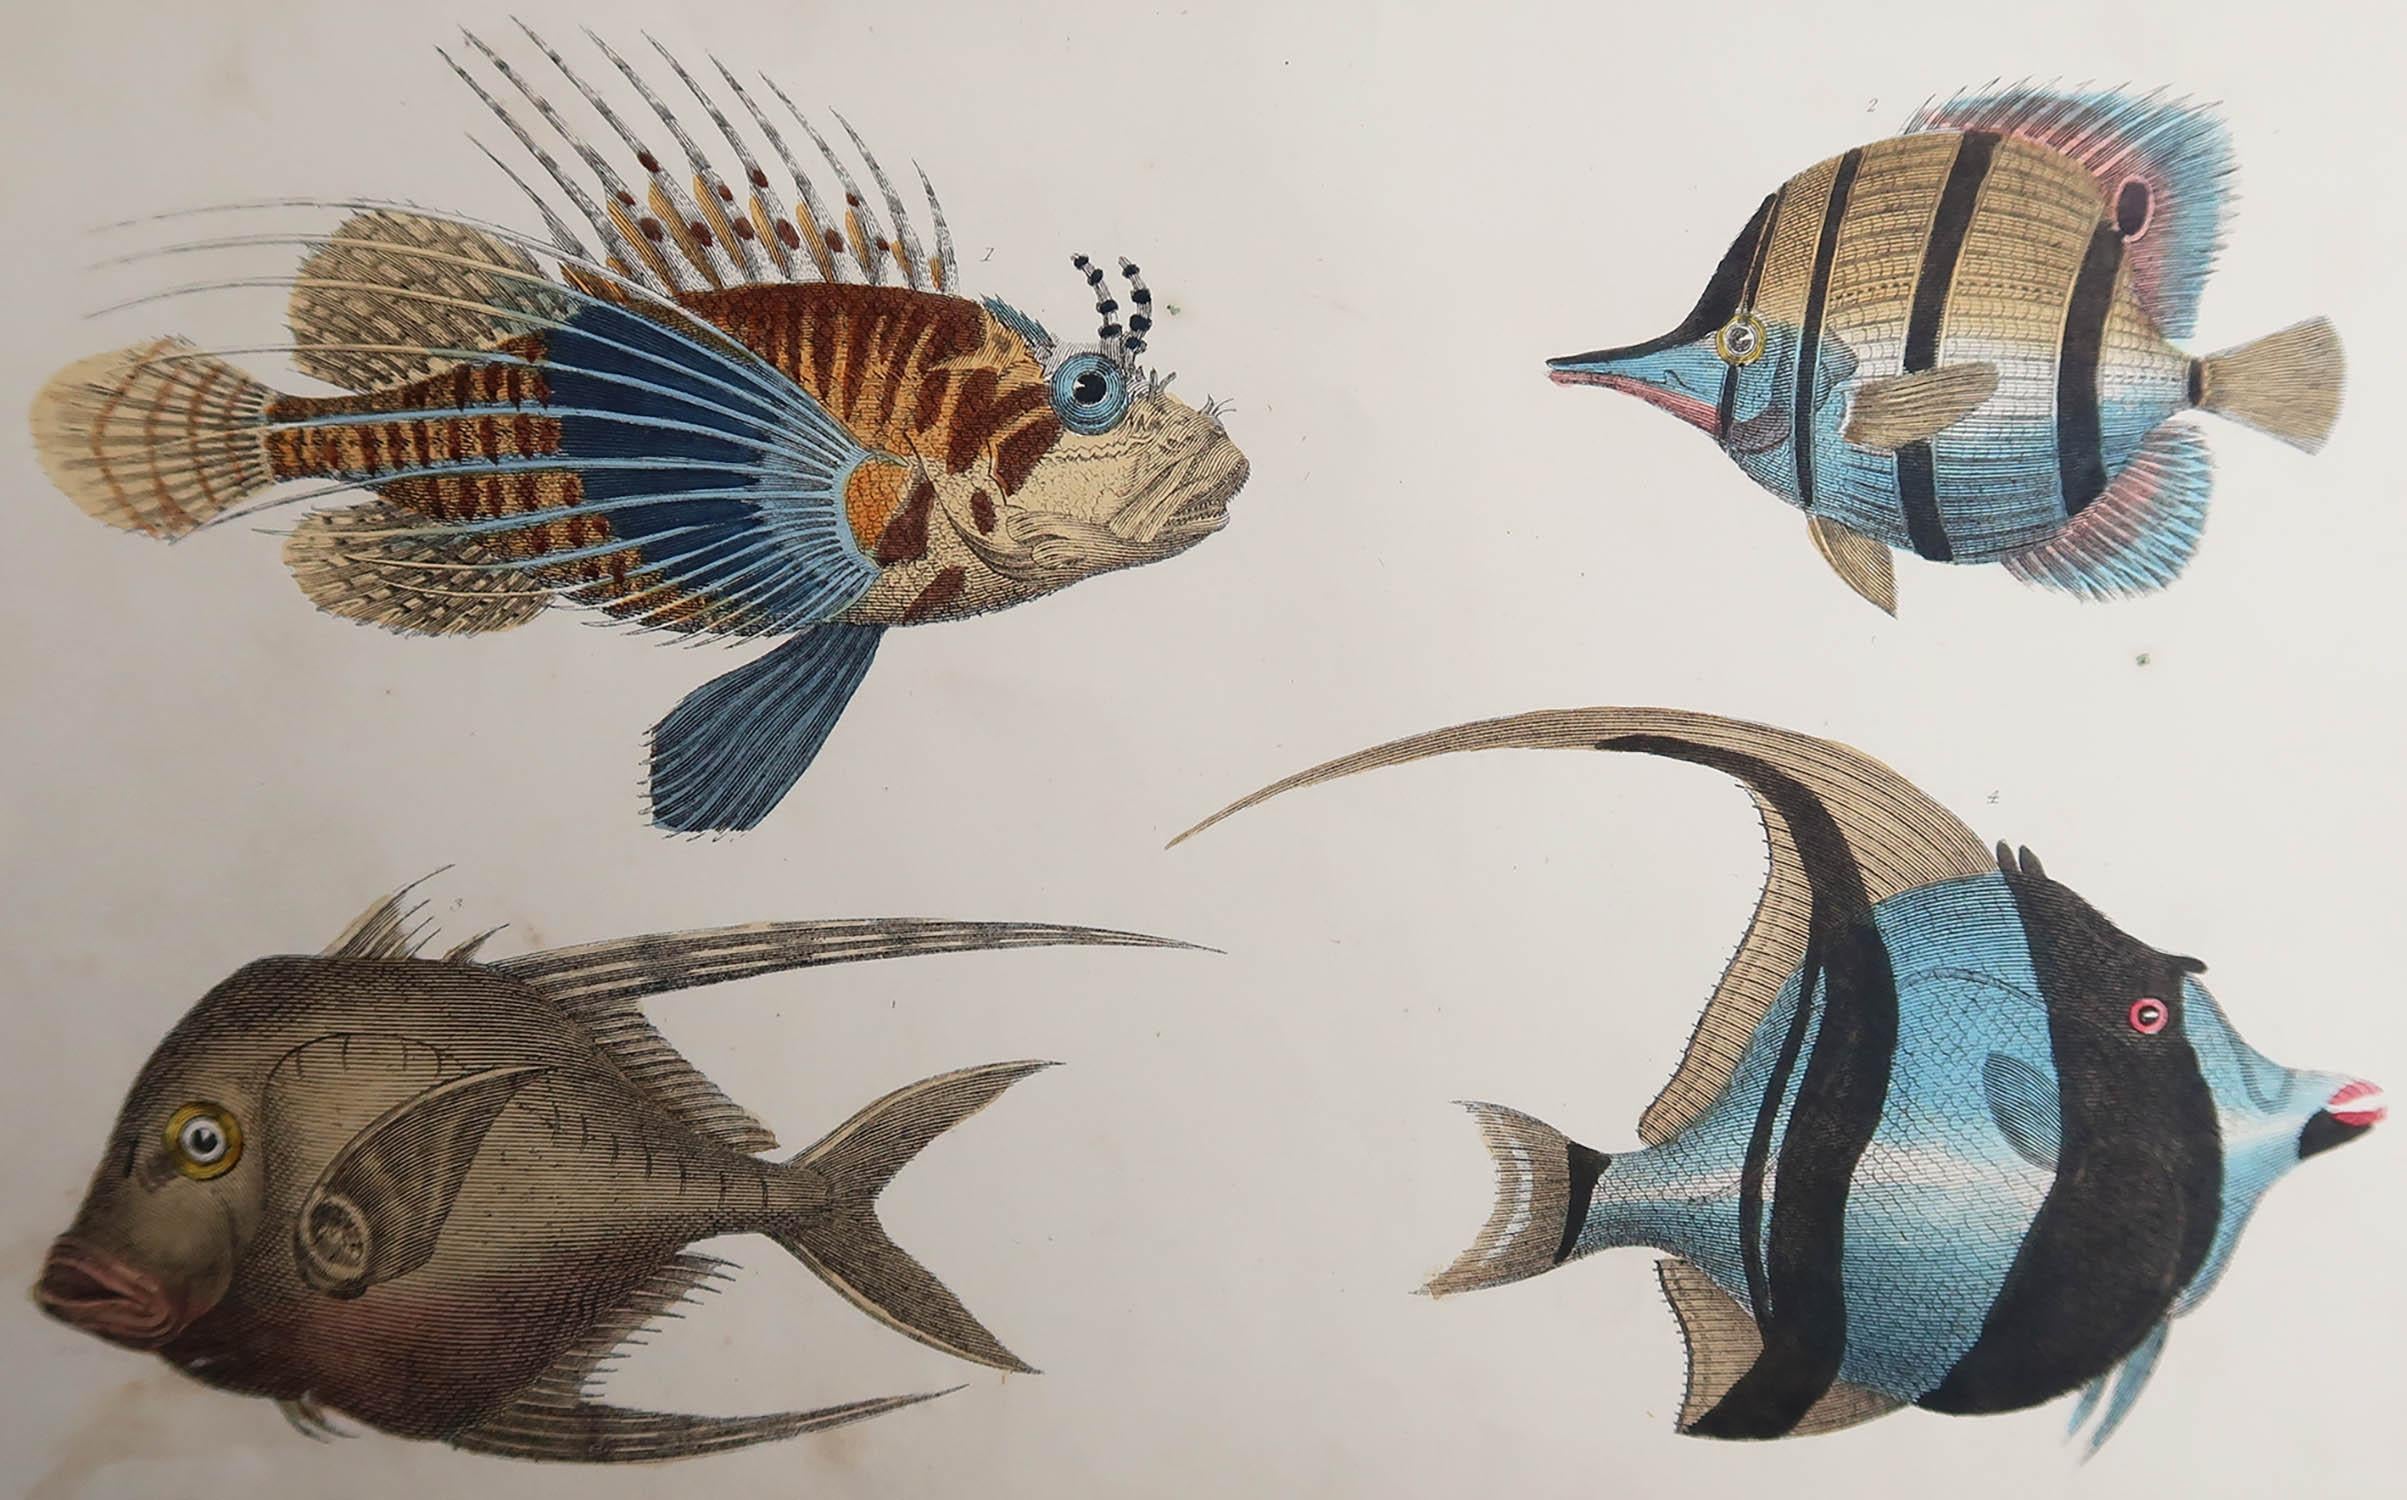 Tolles Bild von Fischen.

Ungerahmt. So haben Sie die Möglichkeit, Ihre eigene Auswahl an Rahmen zu treffen.

Lithographie nach Cpt. Brown mit Original-Handkolorit.

Veröffentlicht 1847.

  






